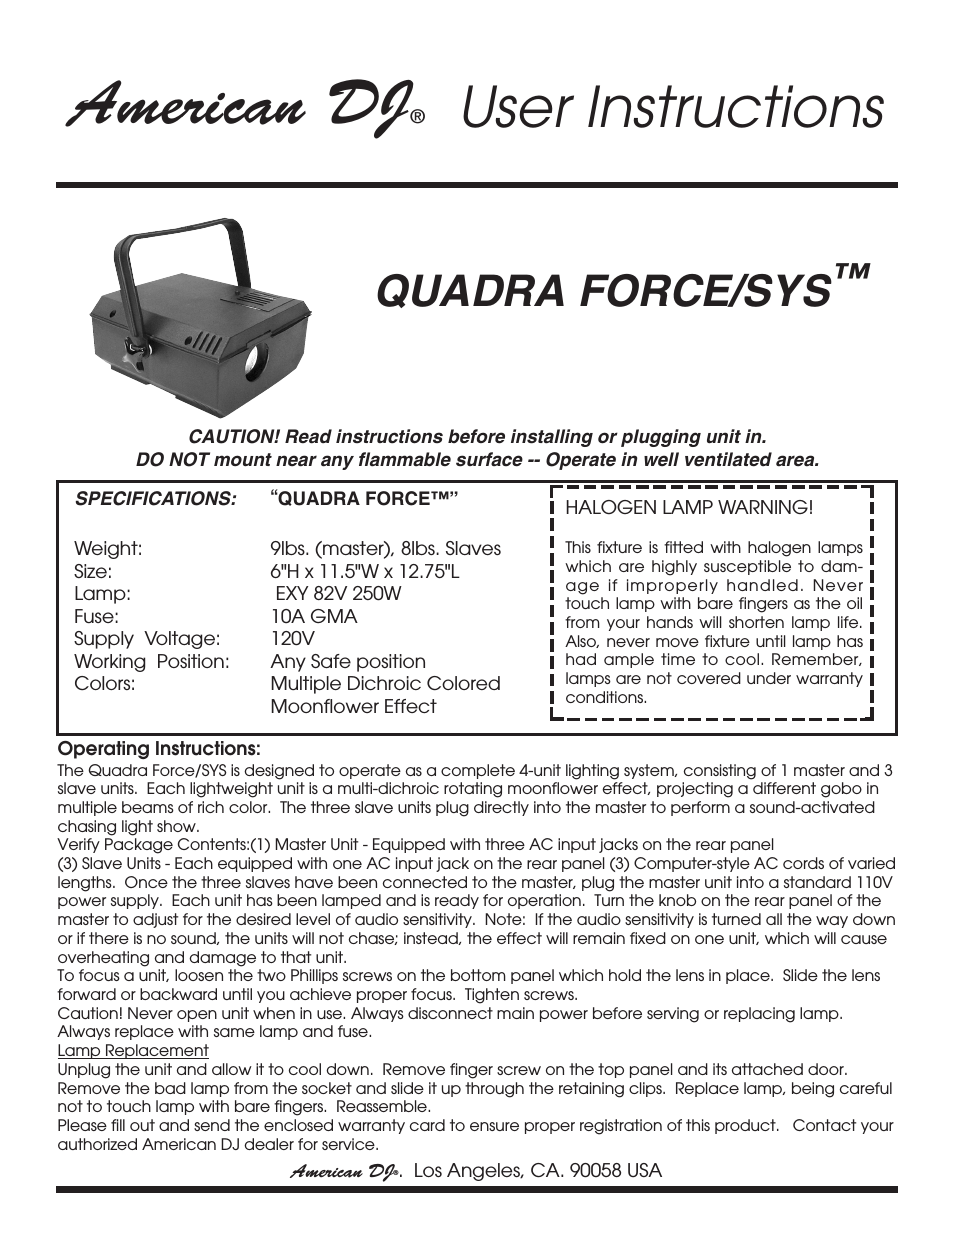 Quadra Force/Sys